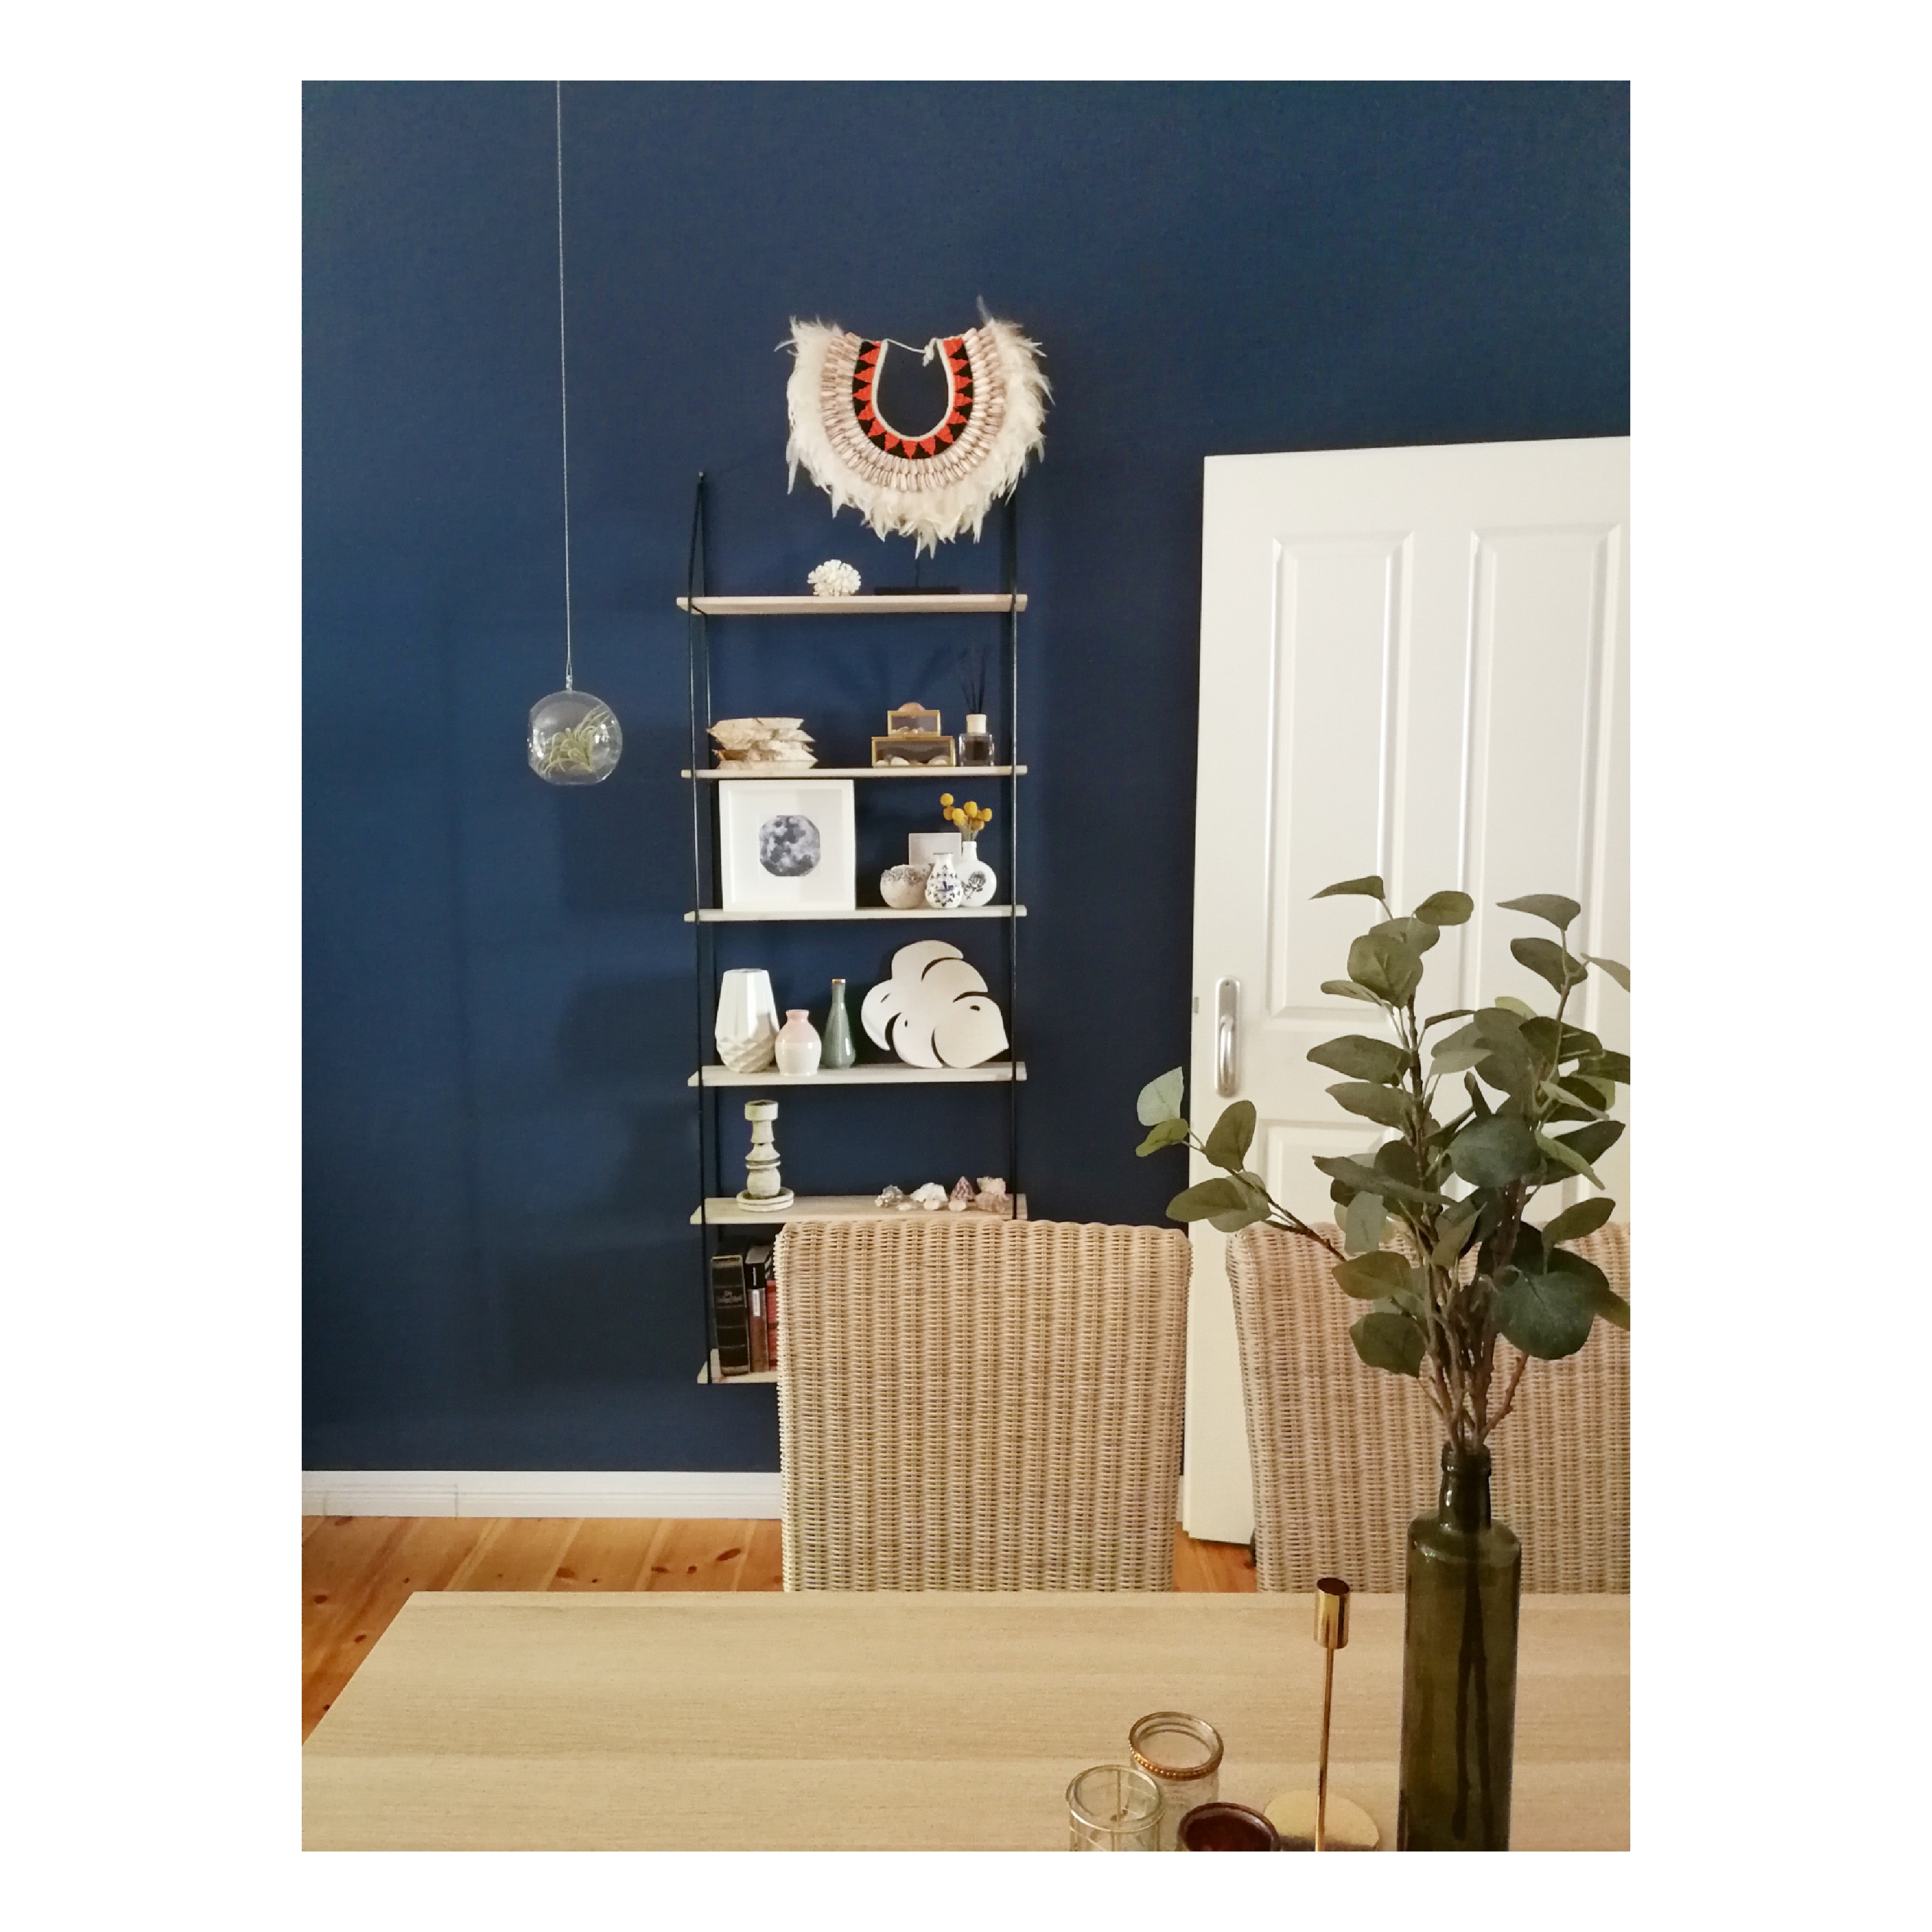 Mein Essbereich im Wohnzimmer 💕
#esstisch #shelfie #wandfarbe #blau #bohonecklace